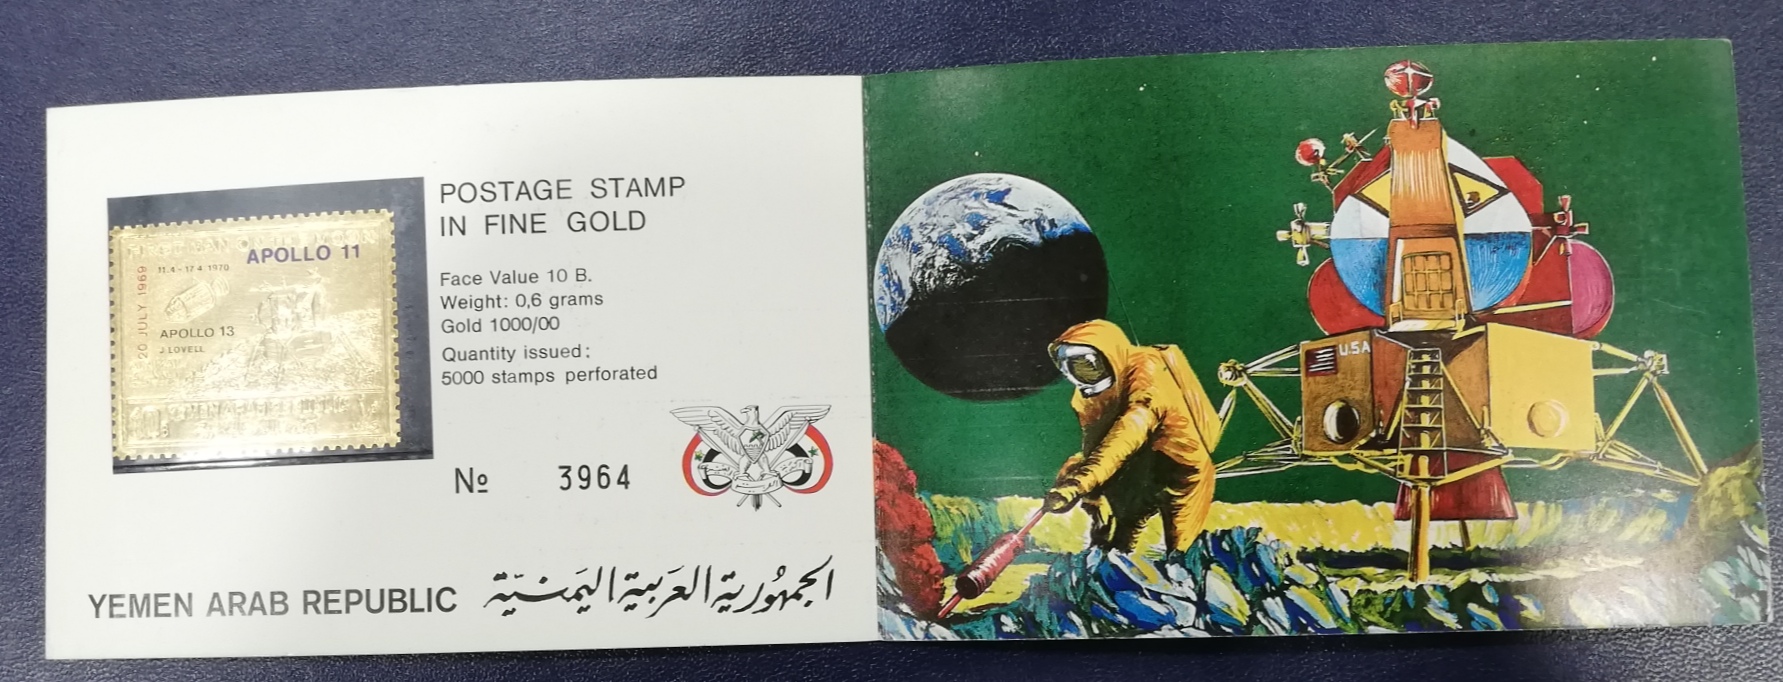 Yemen. Sello en oro fino dedicado al Apollo 13. 1970